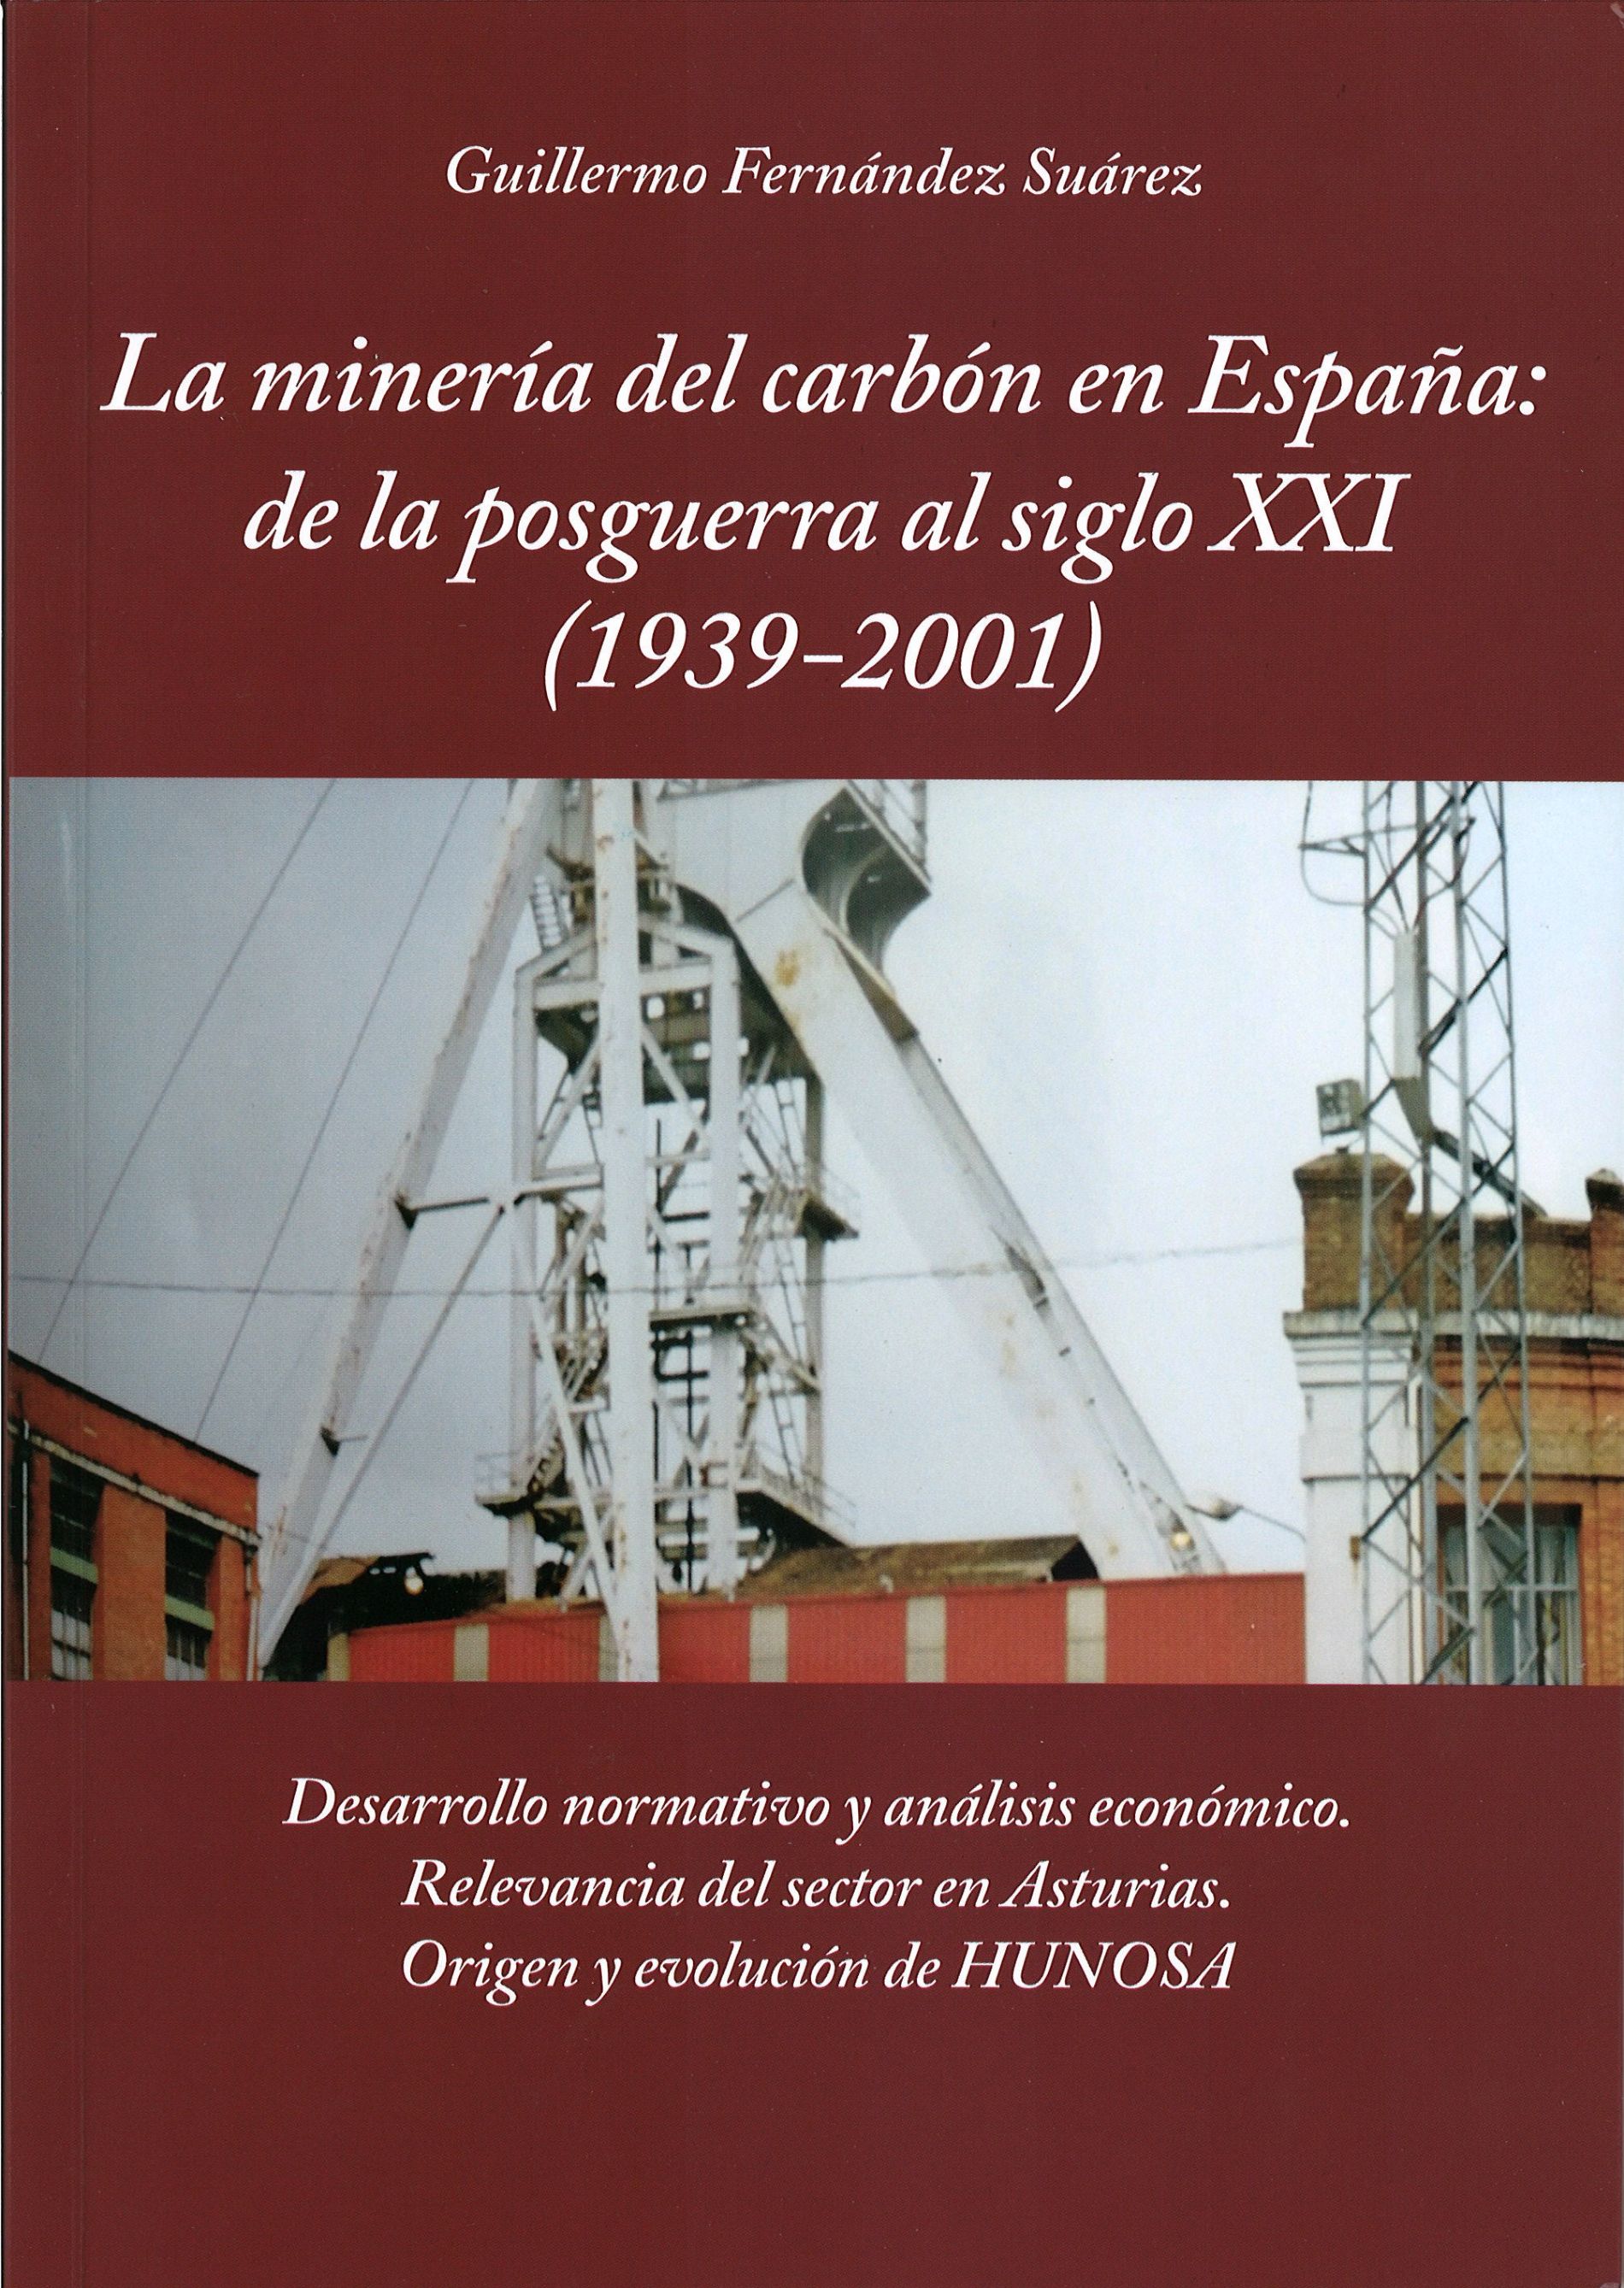 La minería del carbón en España